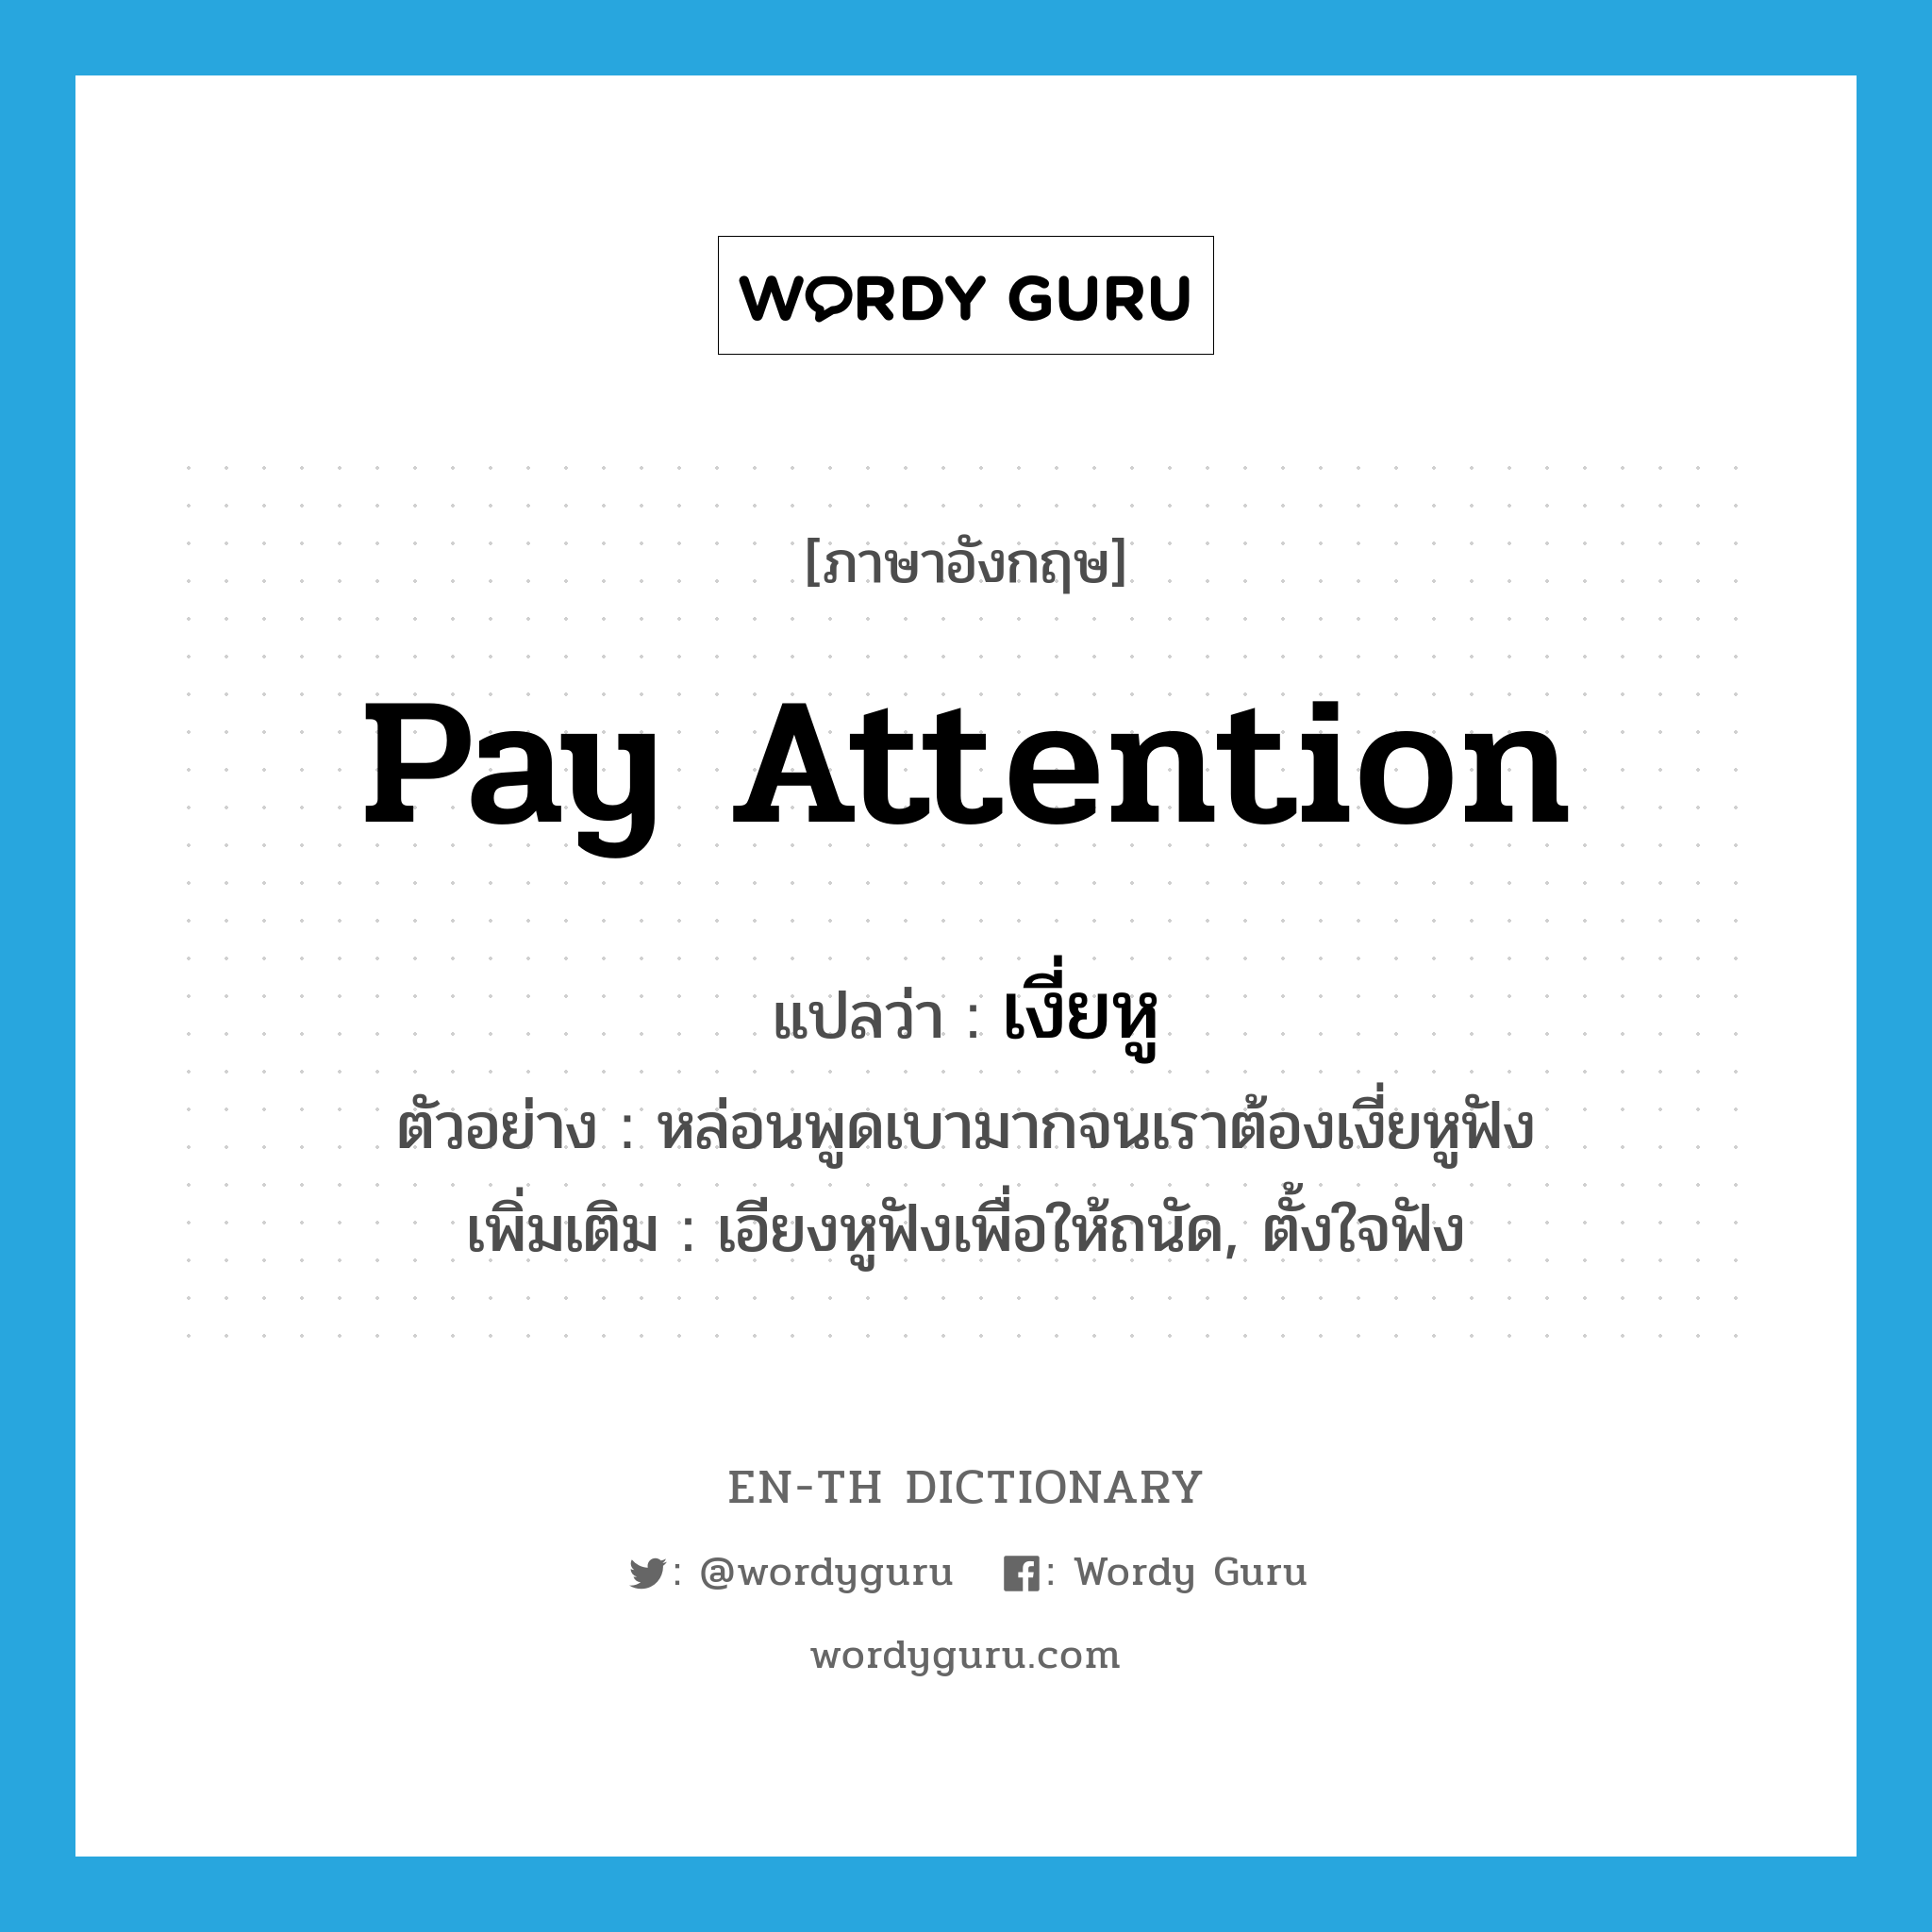 pay attention แปลว่า?, คำศัพท์ภาษาอังกฤษ pay attention แปลว่า เงี่ยหู ประเภท V ตัวอย่าง หล่อนพูดเบามากจนเราต้องเงี่ยหูฟัง เพิ่มเติม เอียงหูฟังเพื่อให้ถนัด, ตั้งใจฟัง หมวด V